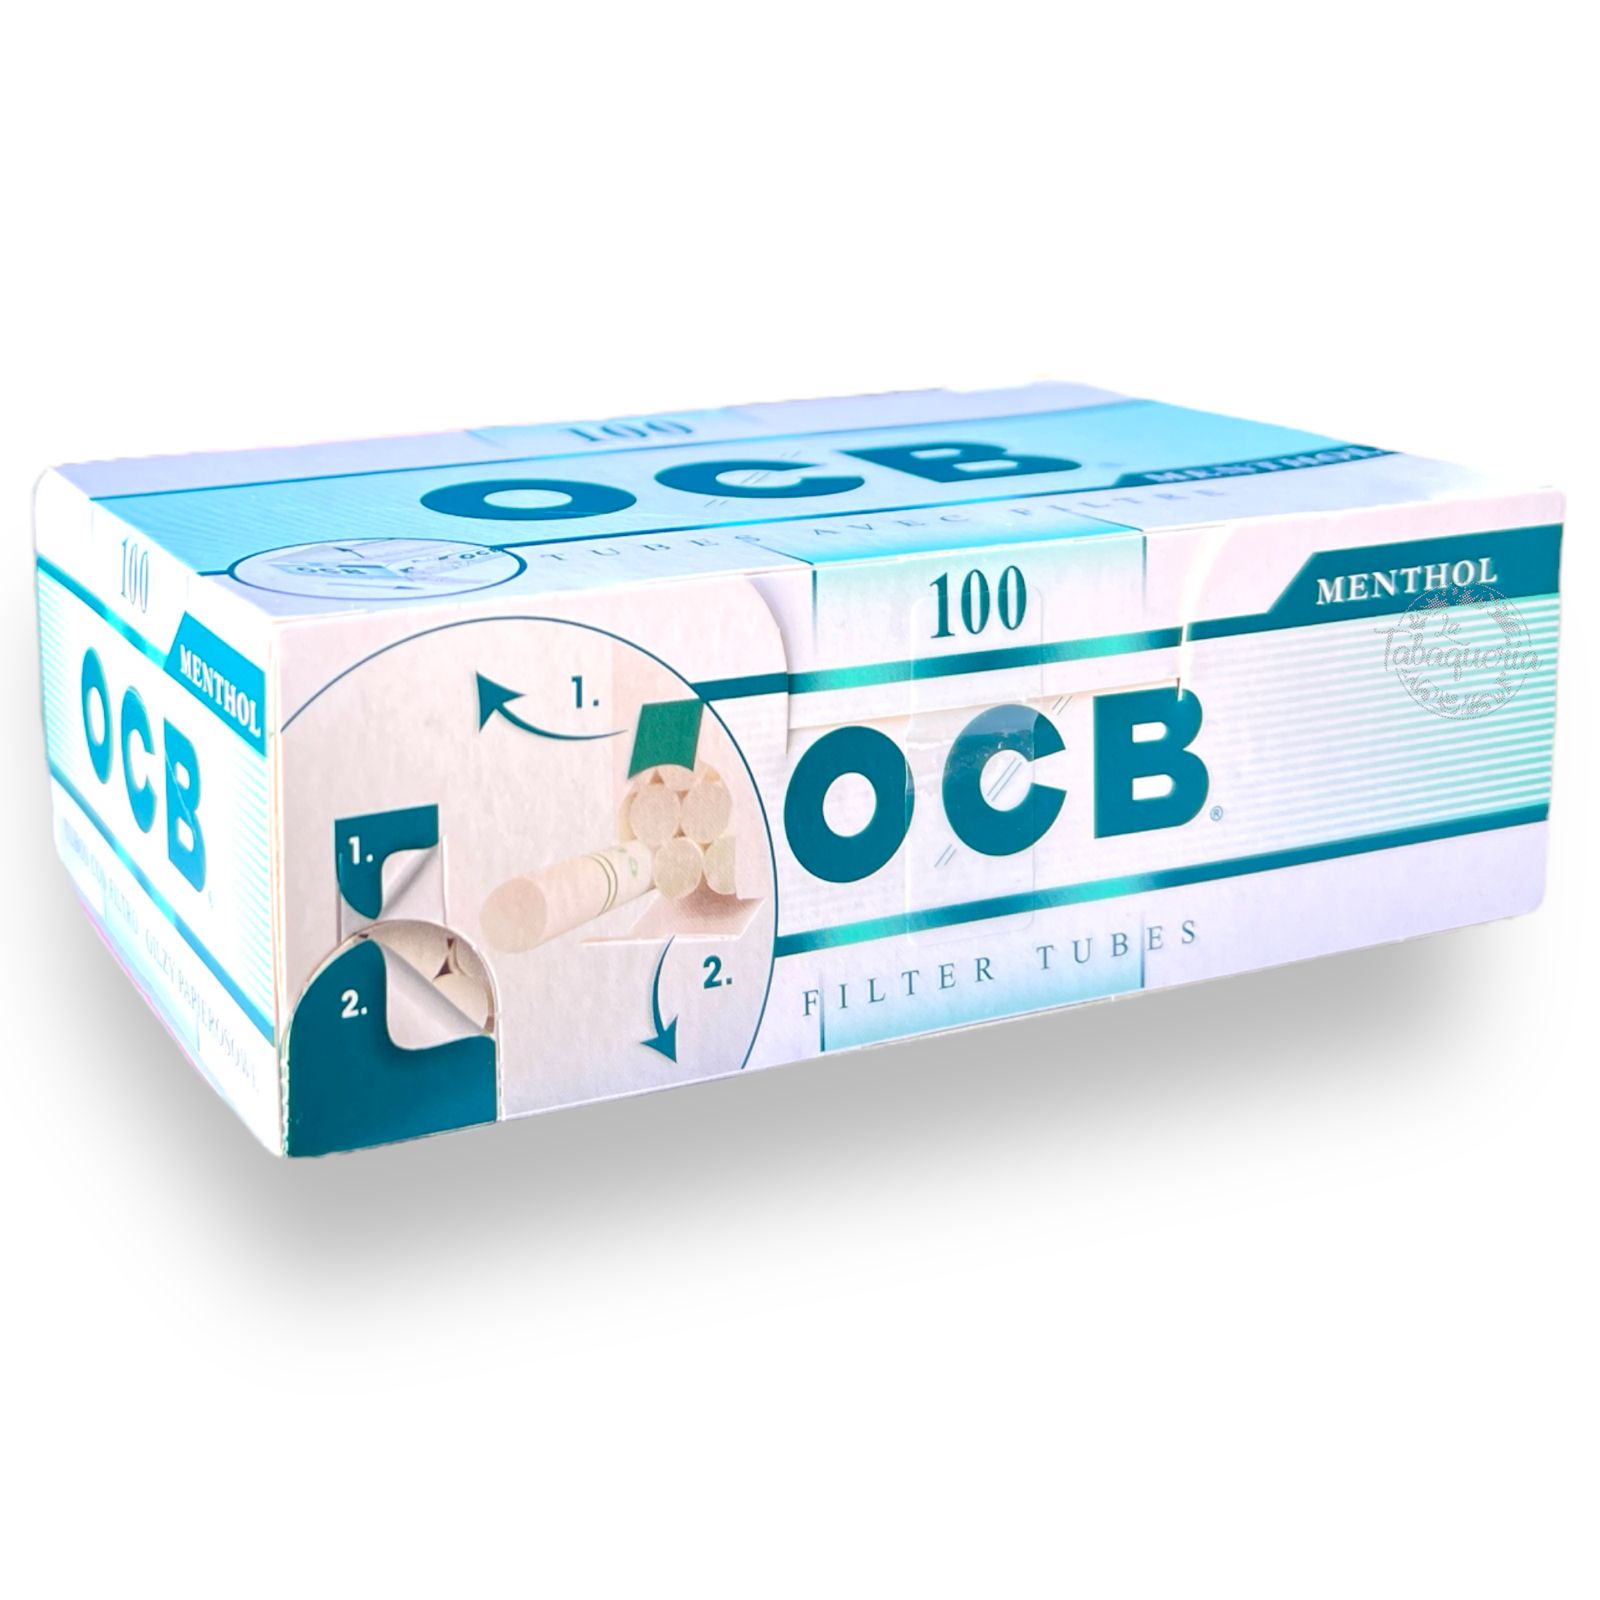 200x OCB Tubos con filtro extra long de 24mm (84x8mm)